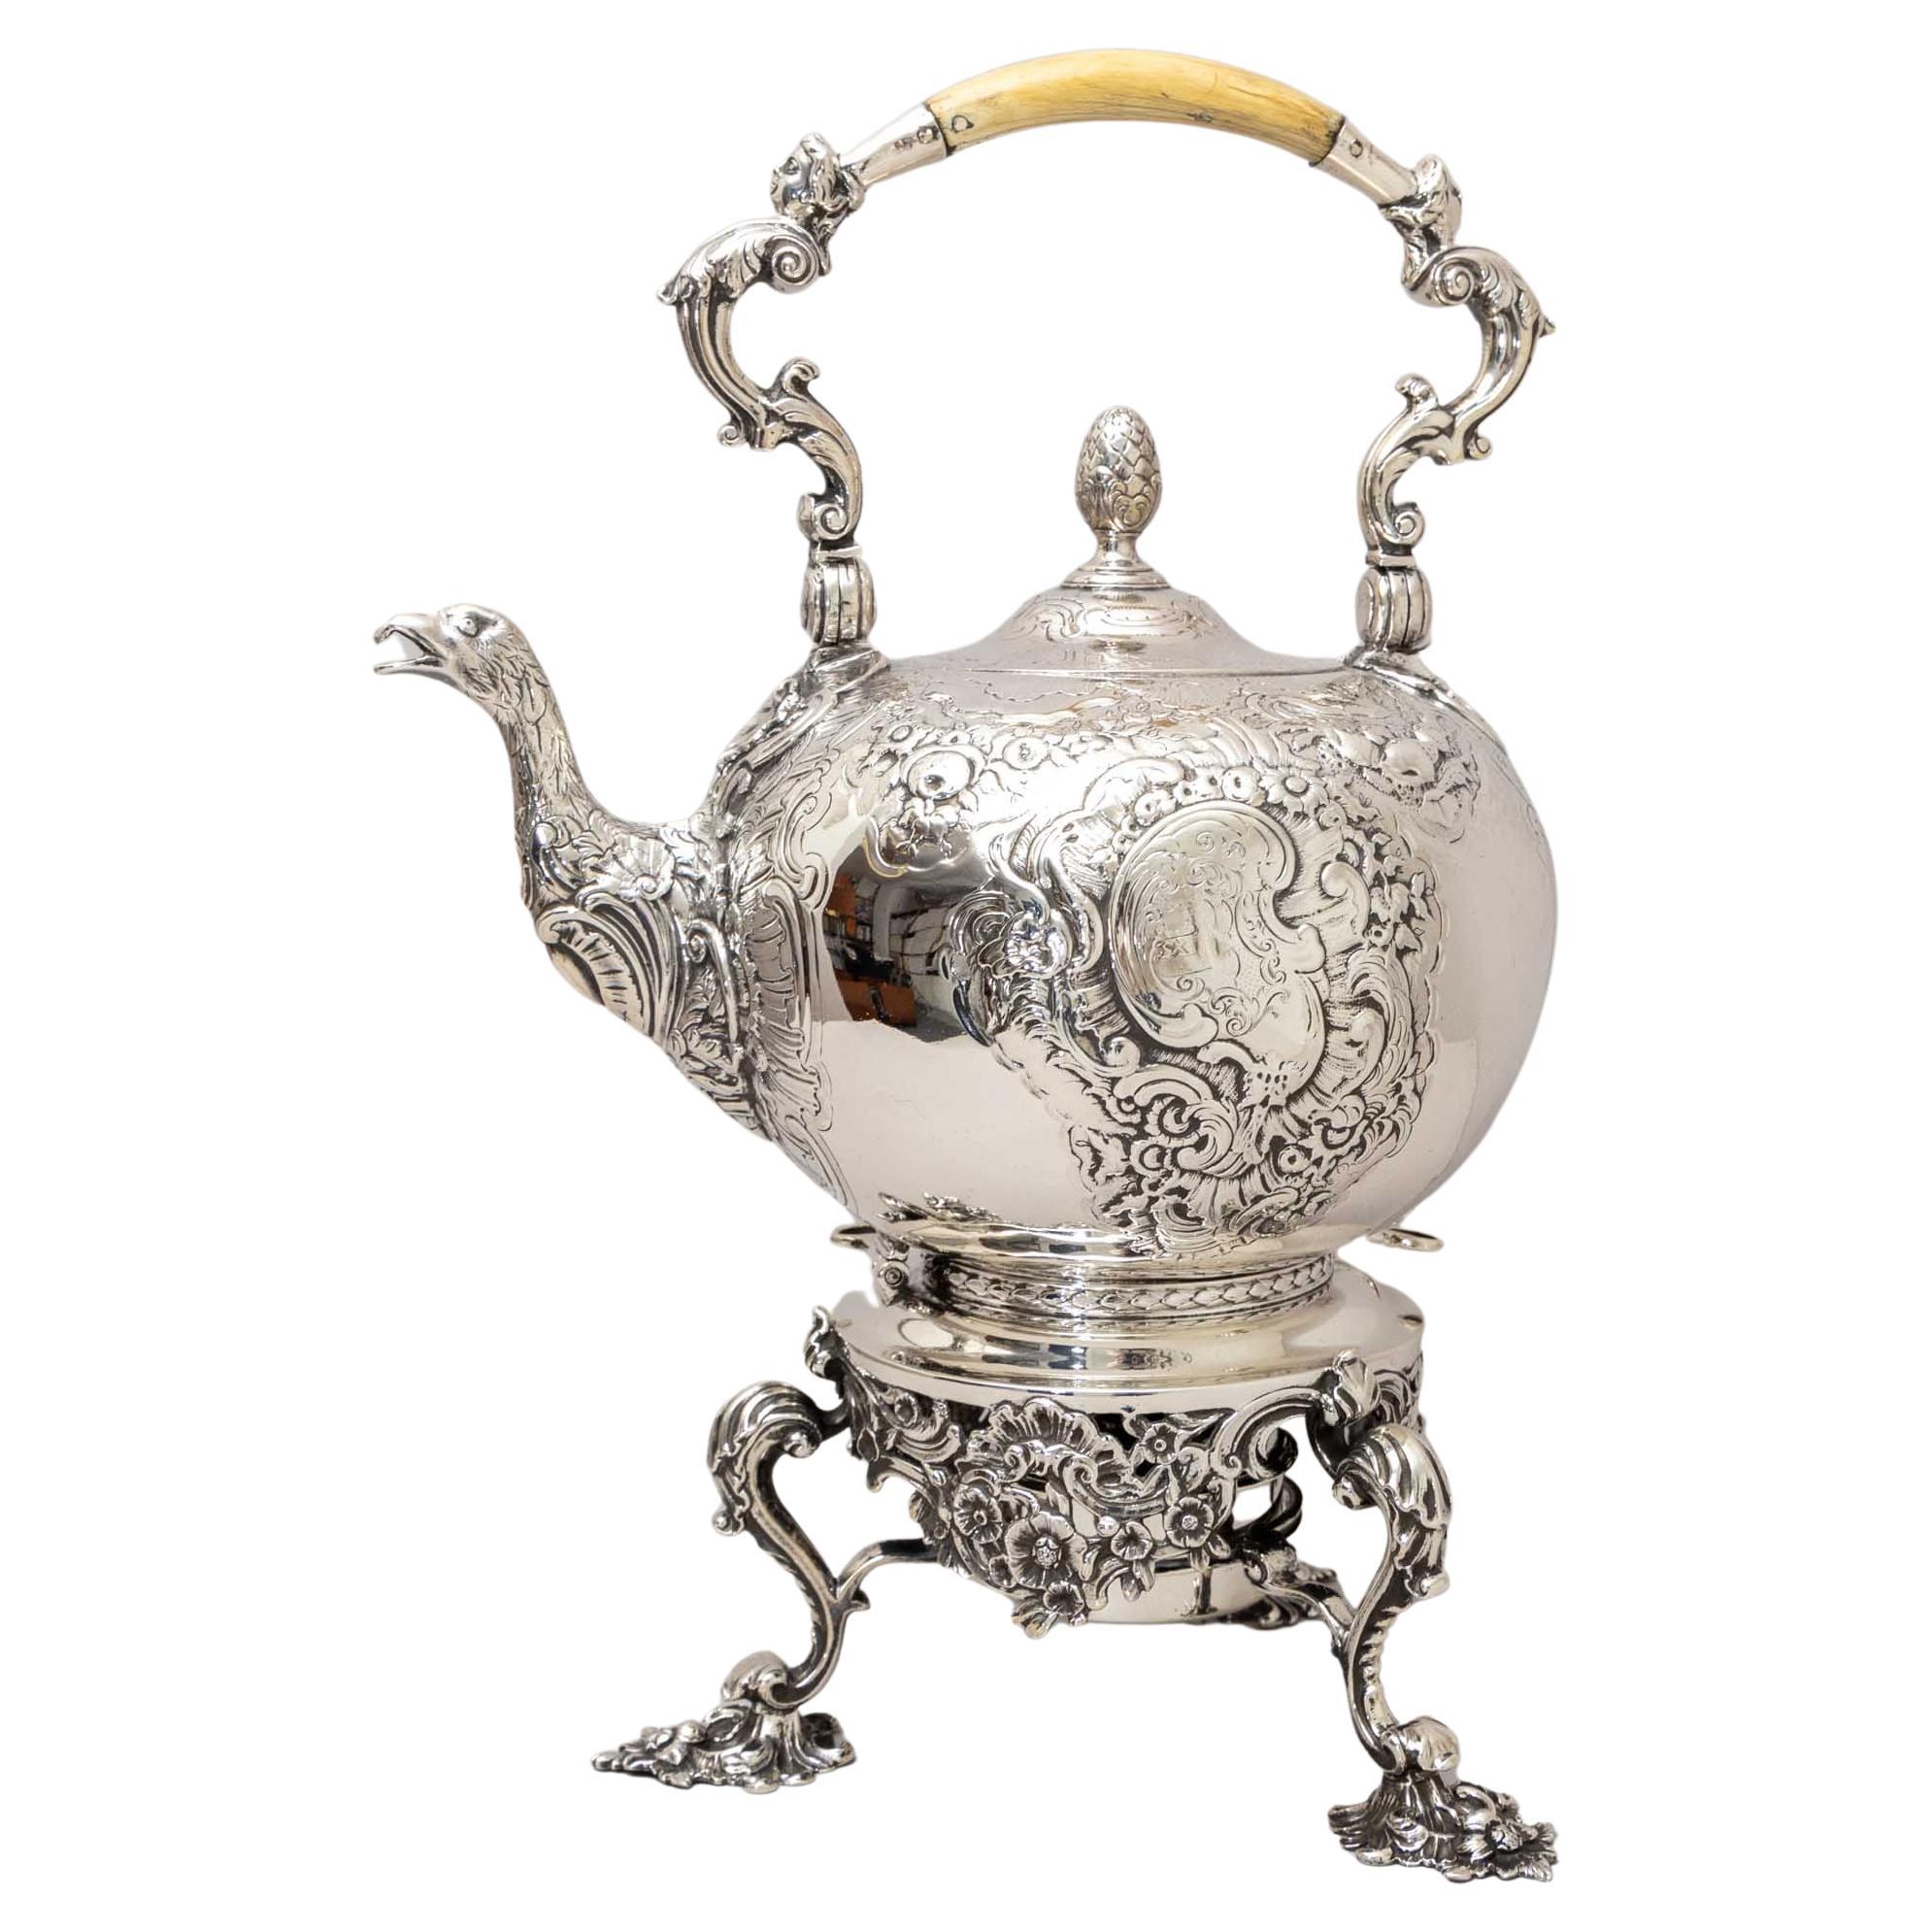 Großer Silbertopf mit Teekanne Warmer, London, 1741 / 1836